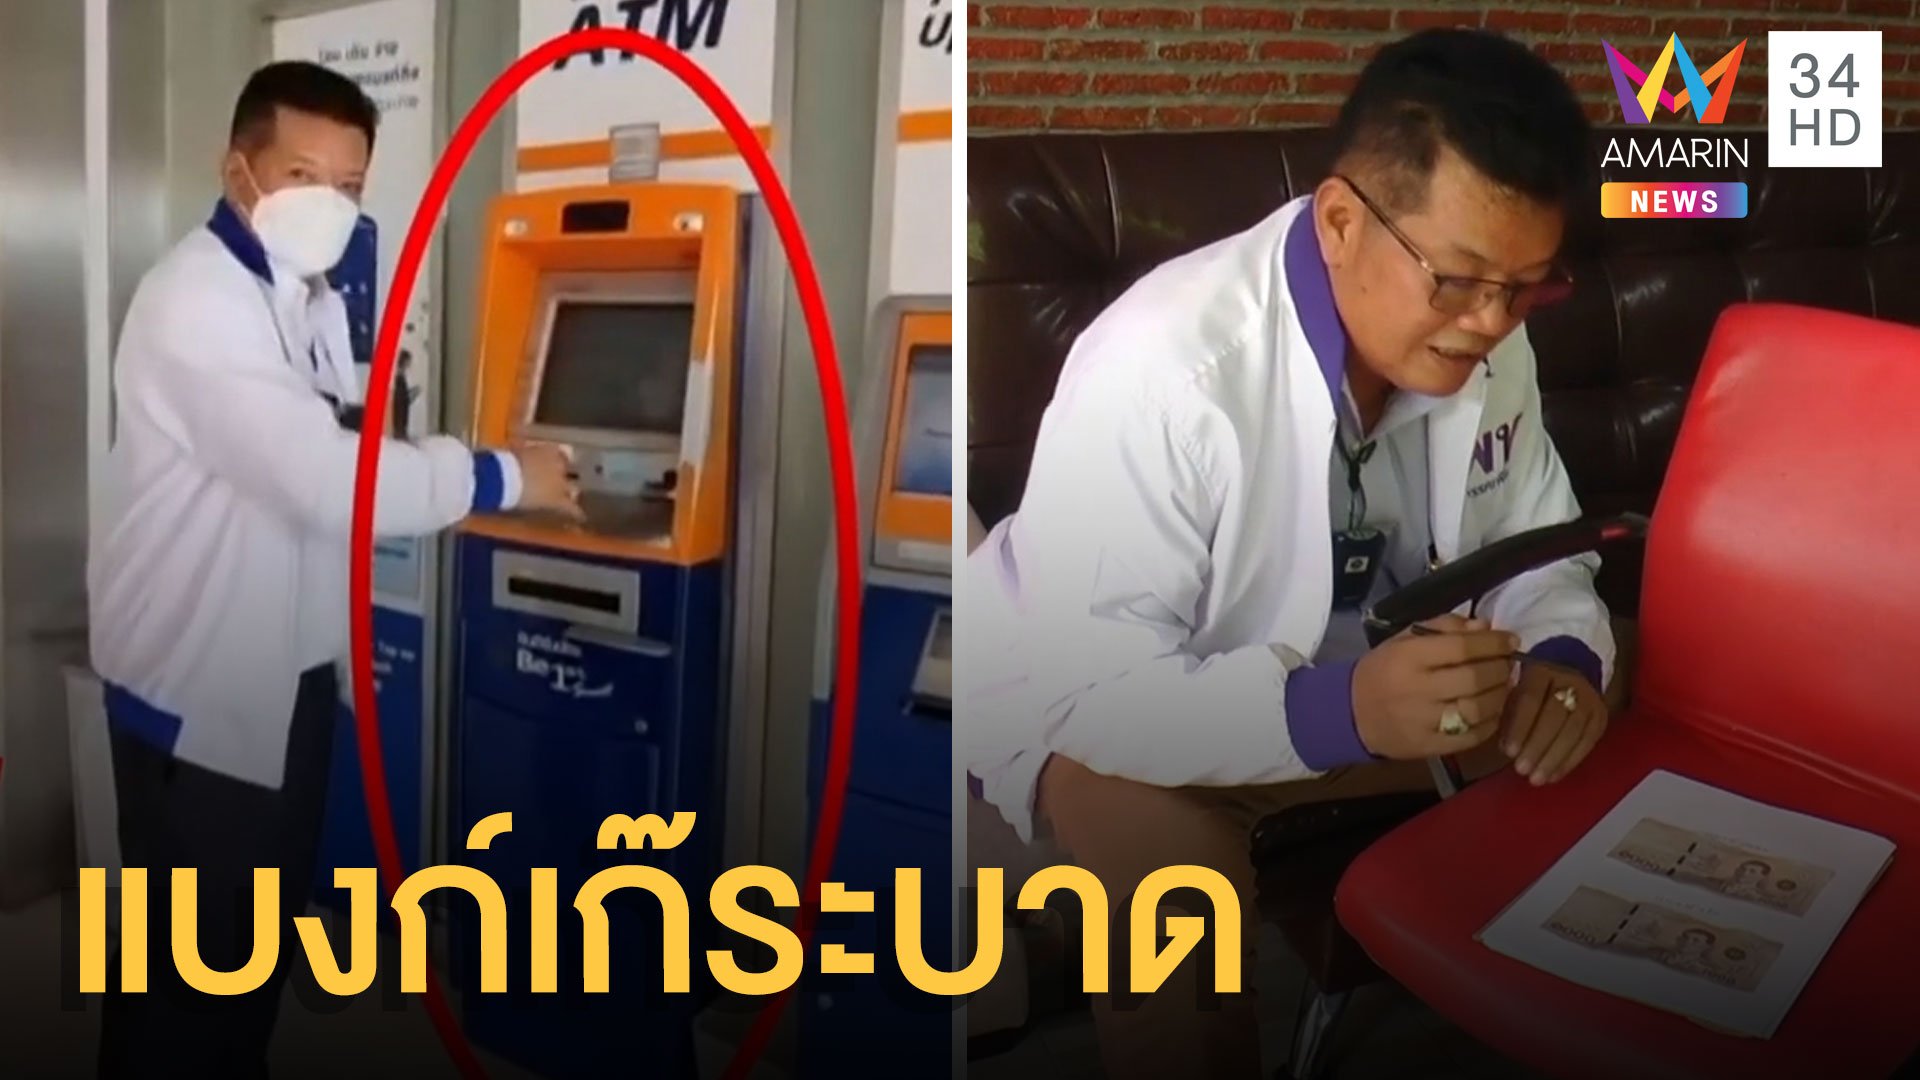 กดเงินจากตู้ ATM ได้แบงก์ปลอม | ข่าวอรุณอมรินทร์ | 16 ก.ย. 64 | AMARIN TVHD34